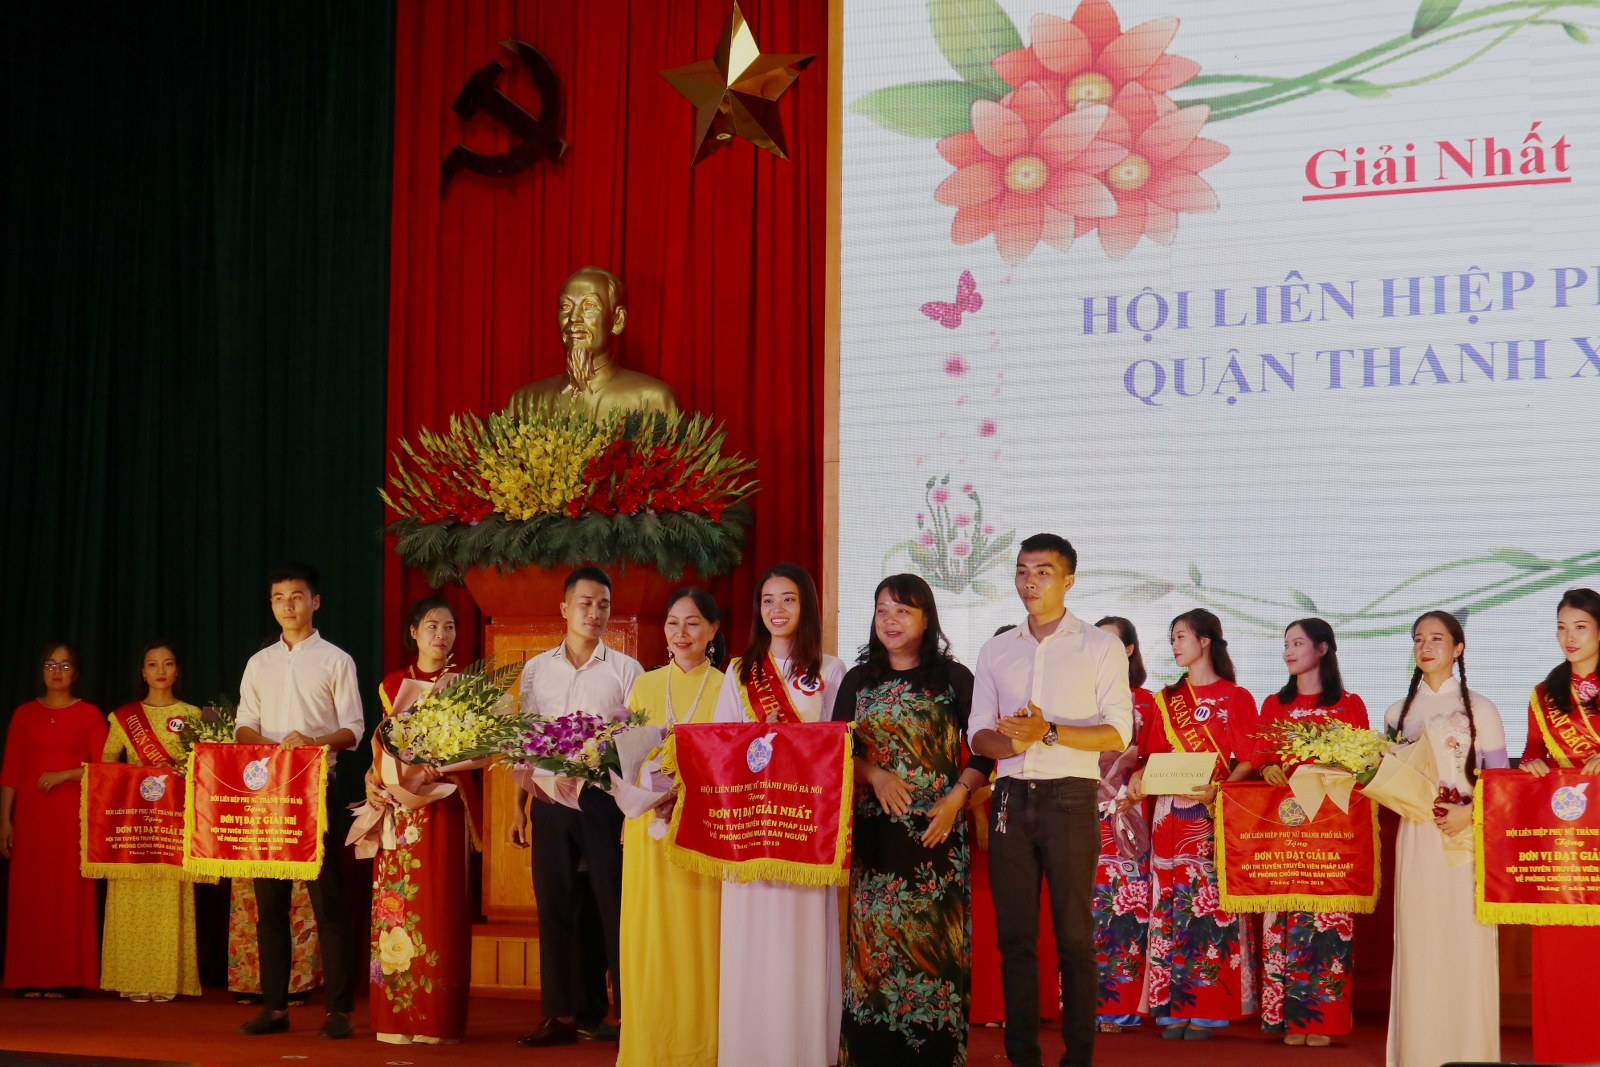 Bà Nguyễn Thị Thu Thuỷ -  Phó chủ tịch Hội LHPN Hà Nội trao giải Nhất cho Hội LHPN quận Thanh Xuân.